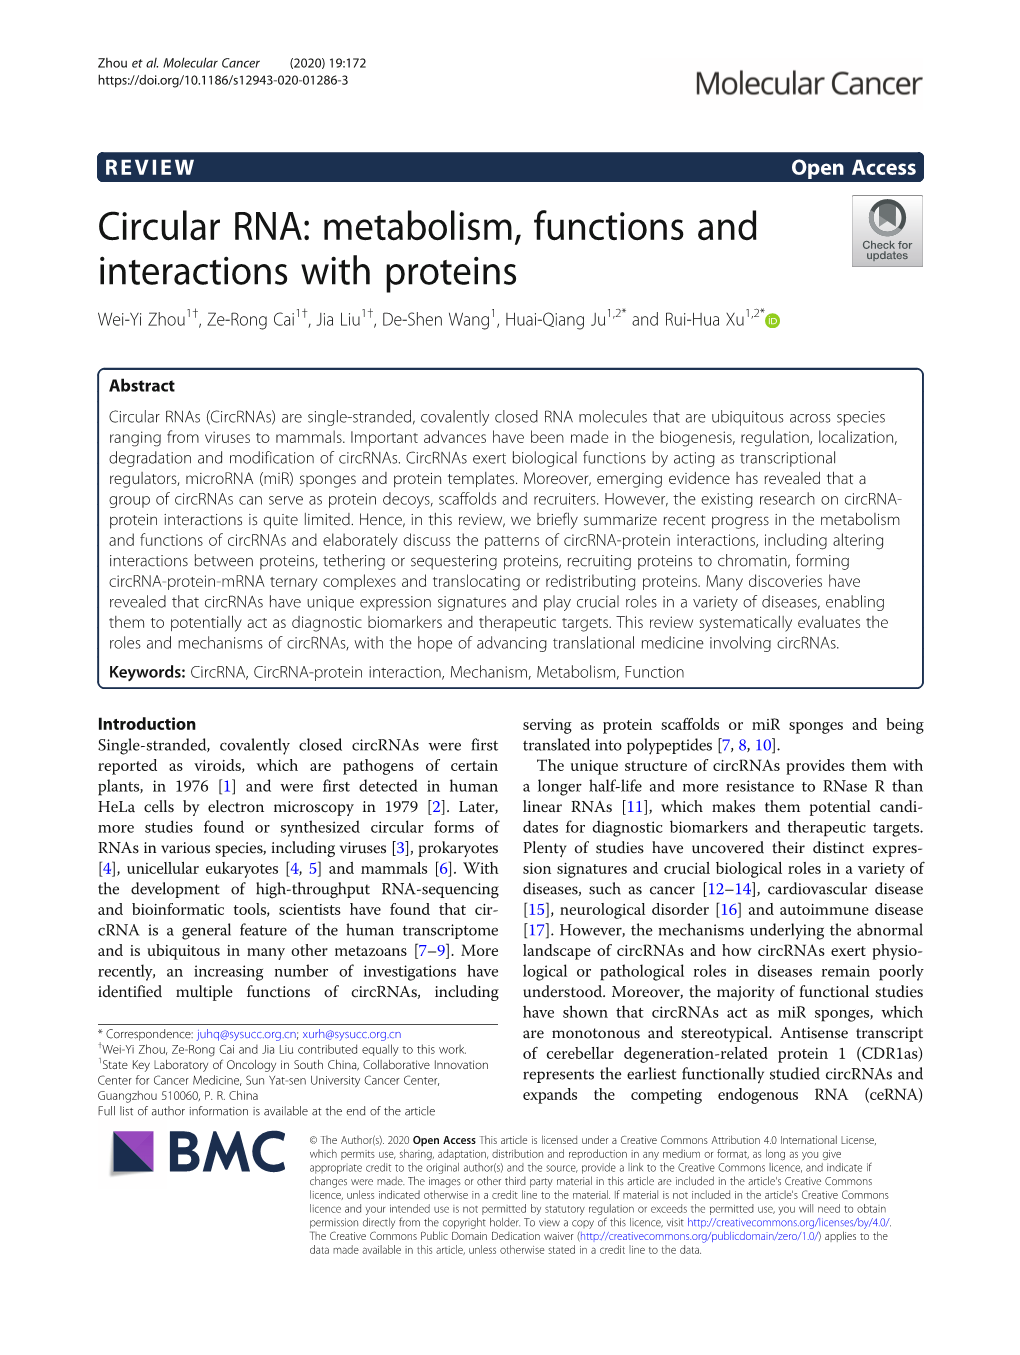 Circular RNA: Metabolism, Functions and Interactions with Proteins Wei-Yi Zhou1†, Ze-Rong Cai1†, Jia Liu1†, De-Shen Wang1, Huai-Qiang Ju1,2* and Rui-Hua Xu1,2*